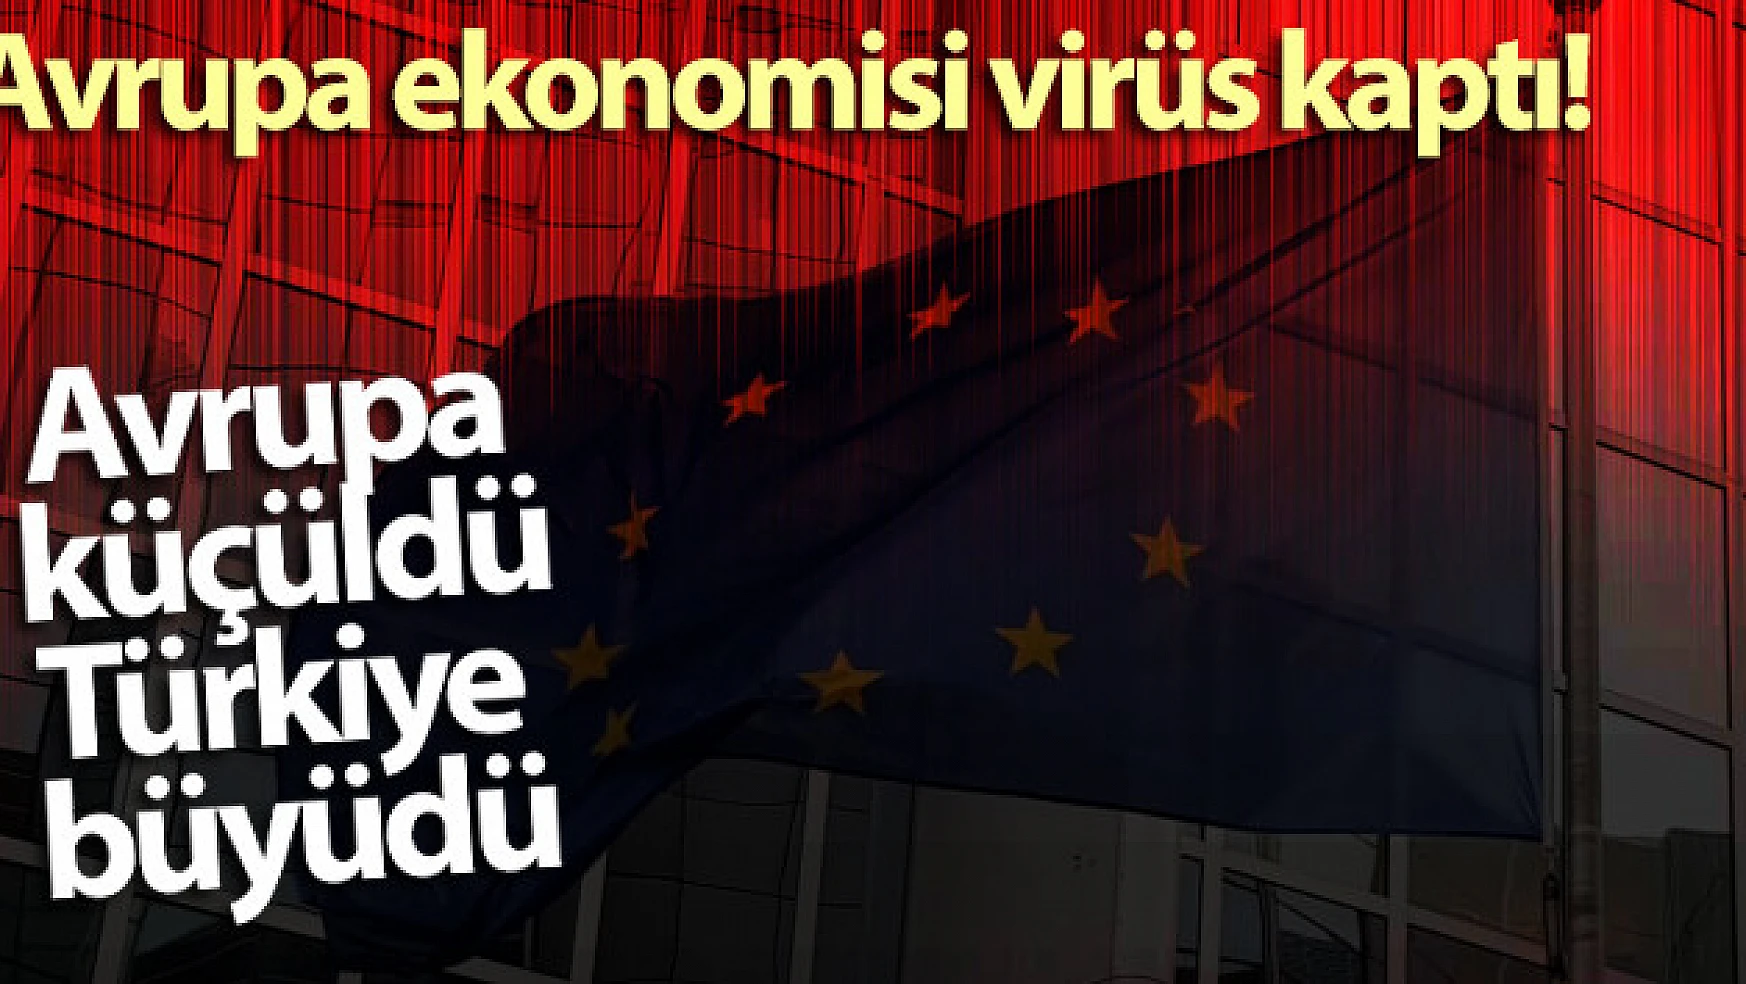 Avrupa ekonomisi virüs kaptı